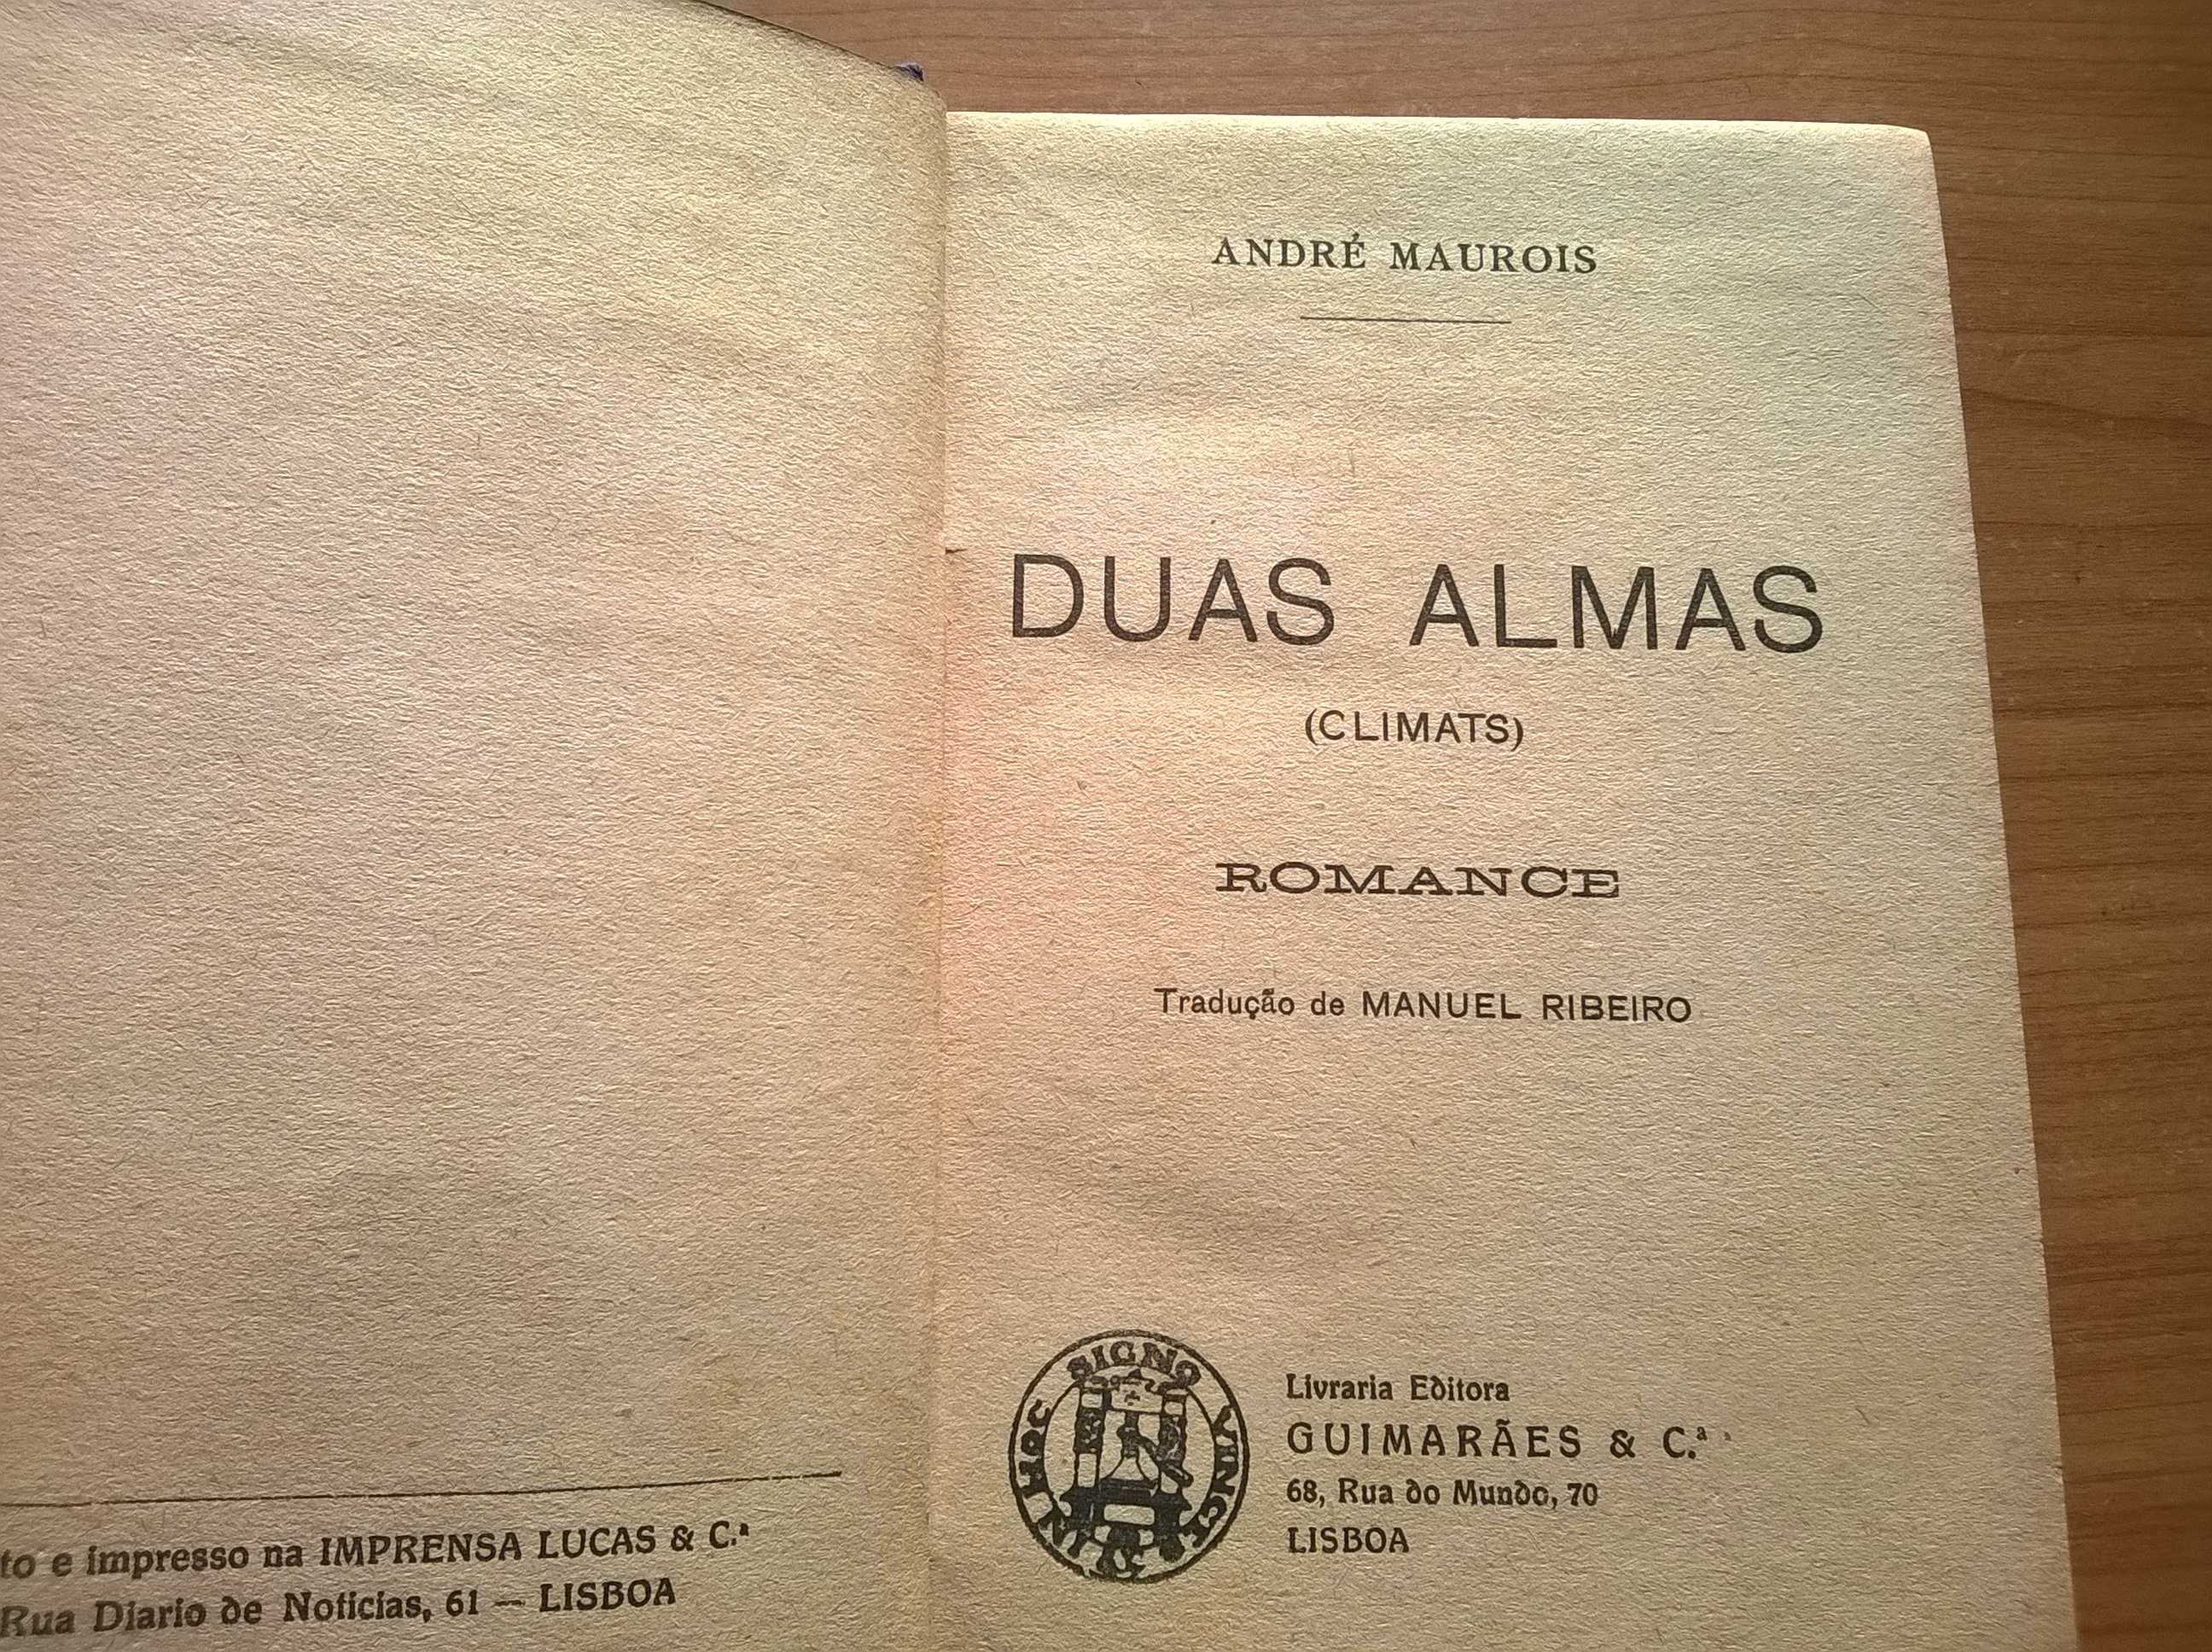 " Duas Almas " - André Maurois (portes grátis)